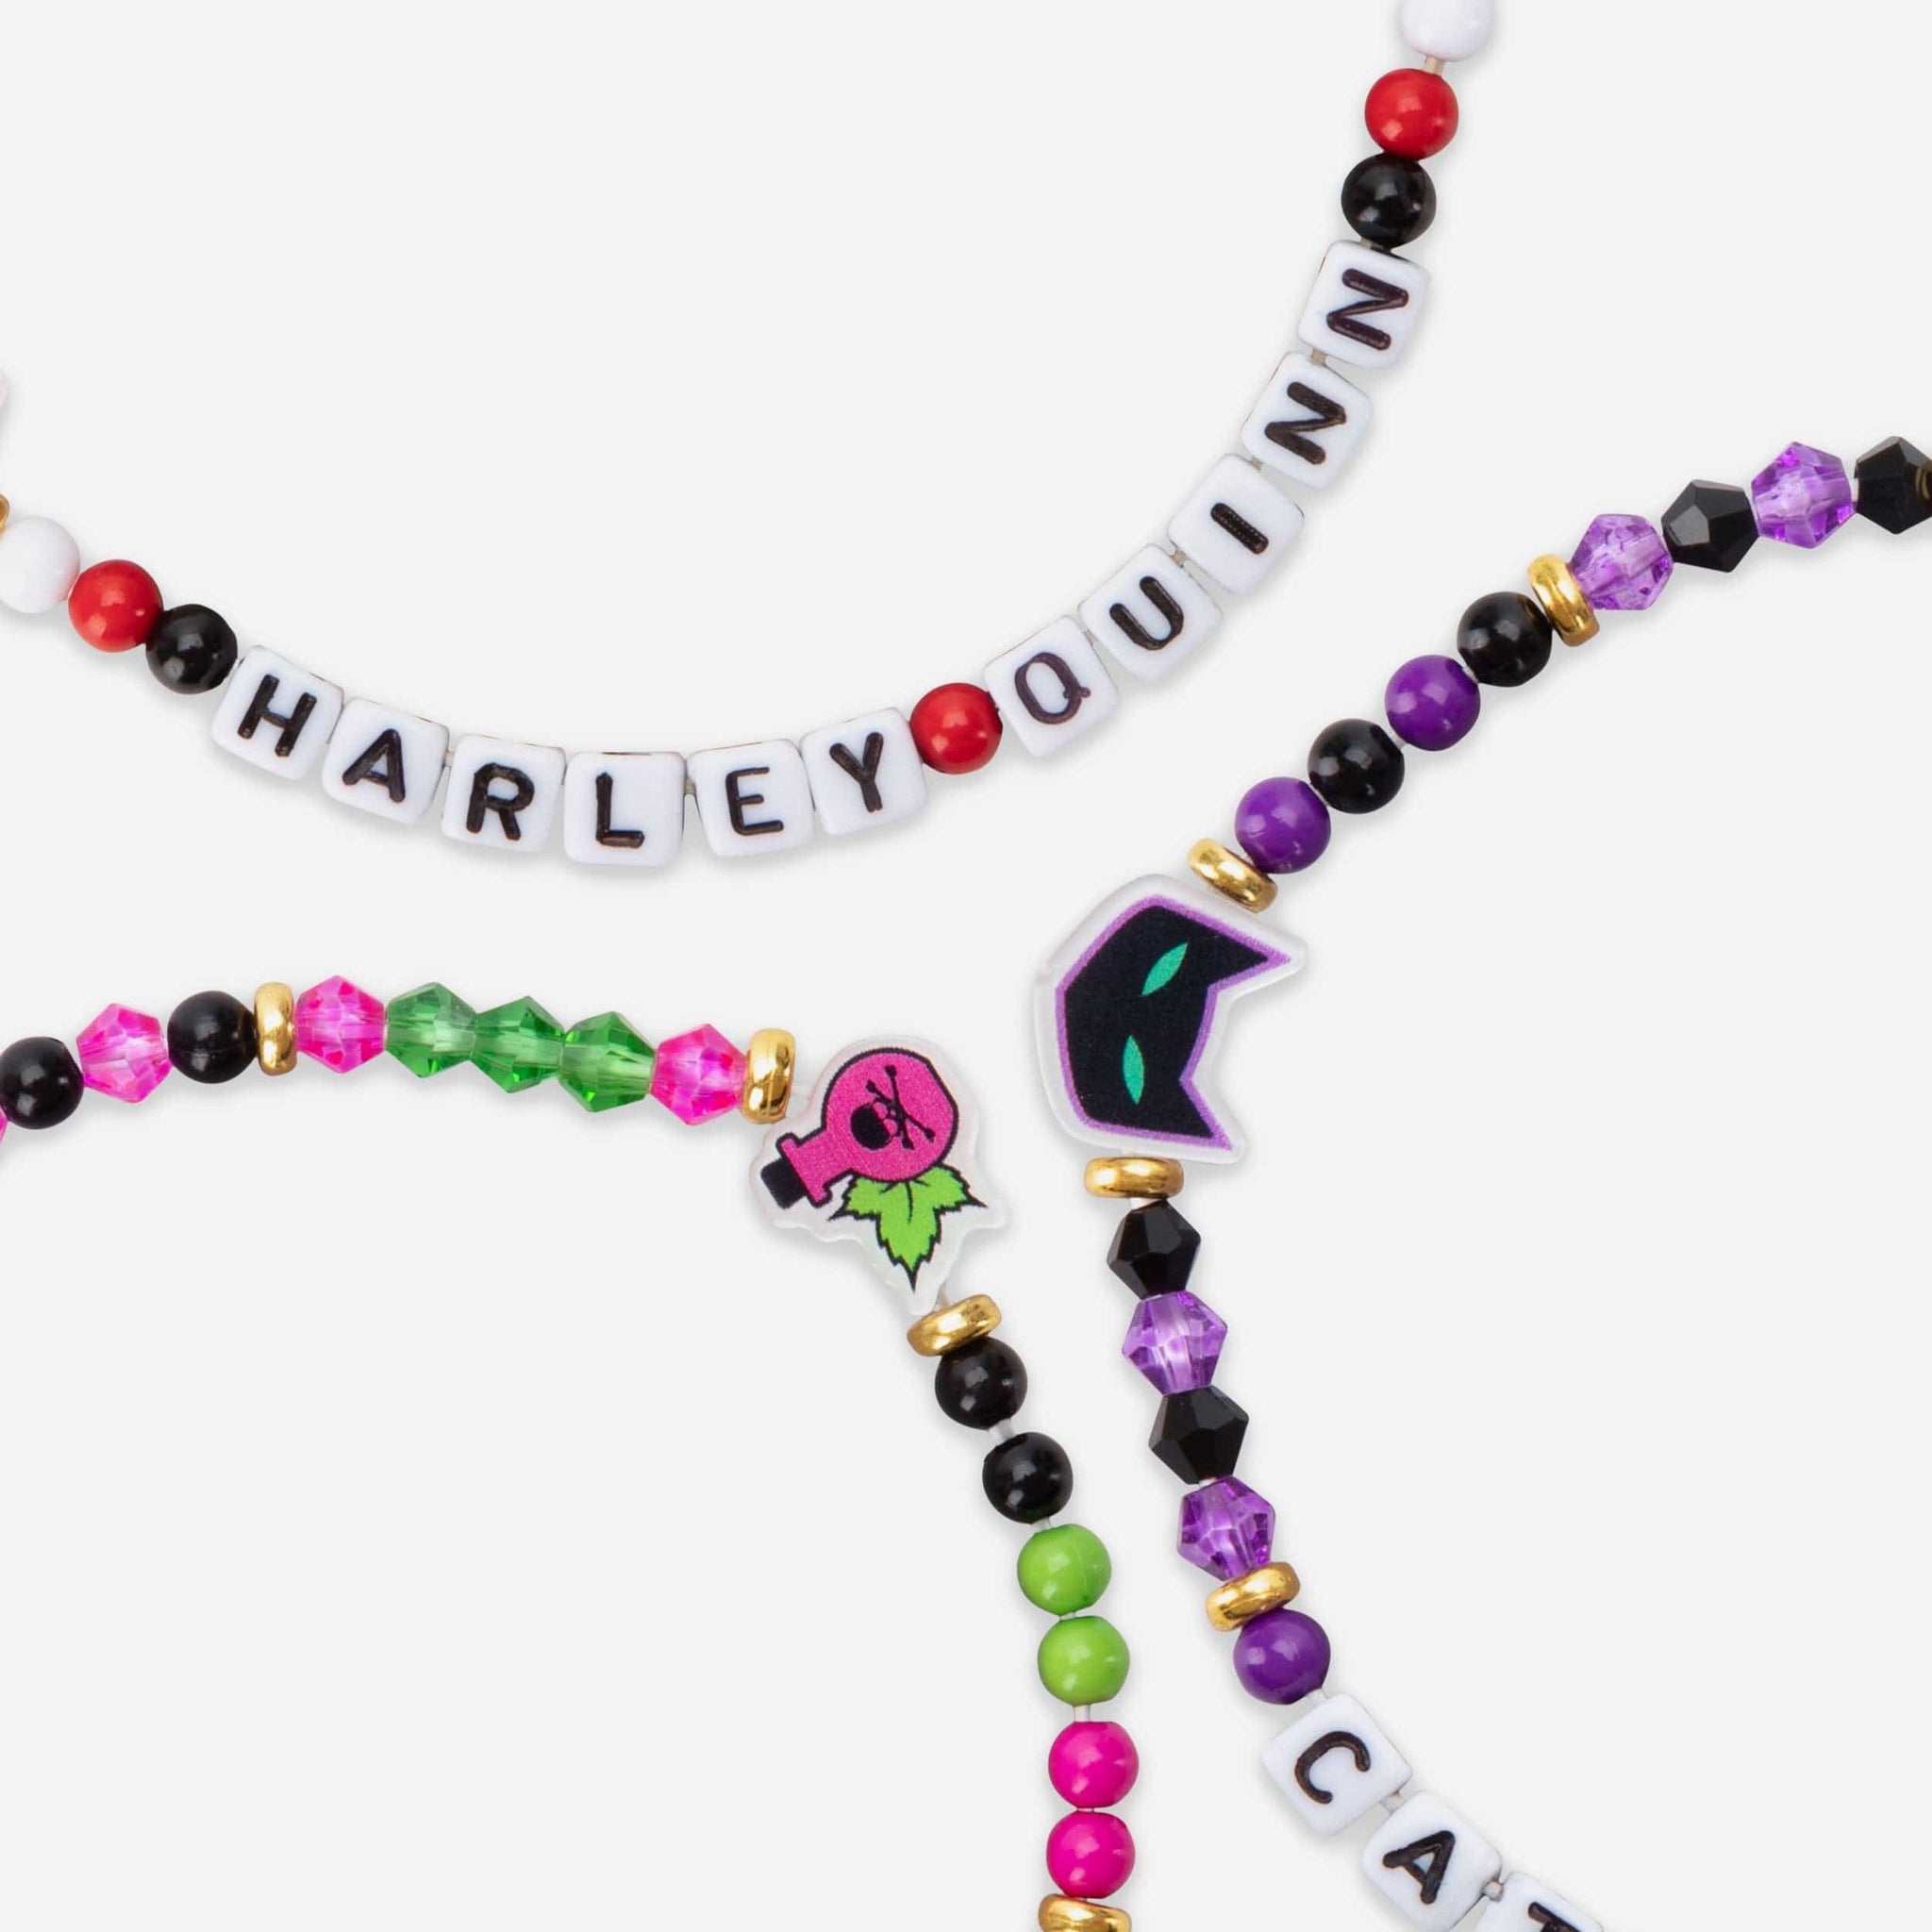 Harley Quinn & Poison Ivy Kandi Bracelets - Etsy